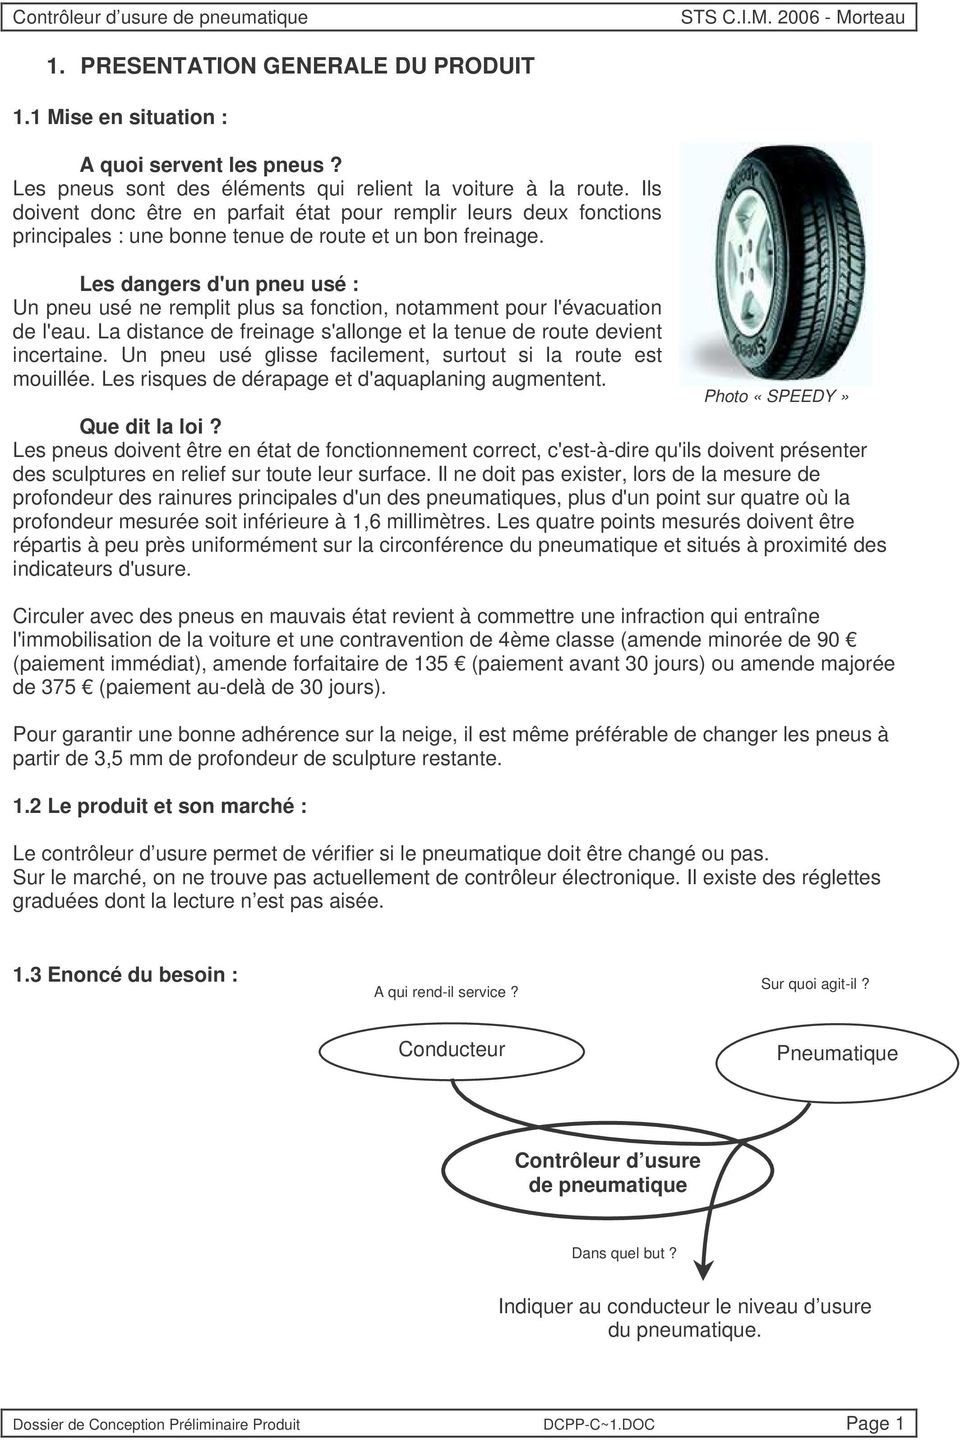 Les dangers d'un pneu usé : Un pneu usé ne remplit plus sa fonction, notamment pour l'évacuation de l'eau. La distance de freinage s'allonge et la tenue de route devient incertaine.